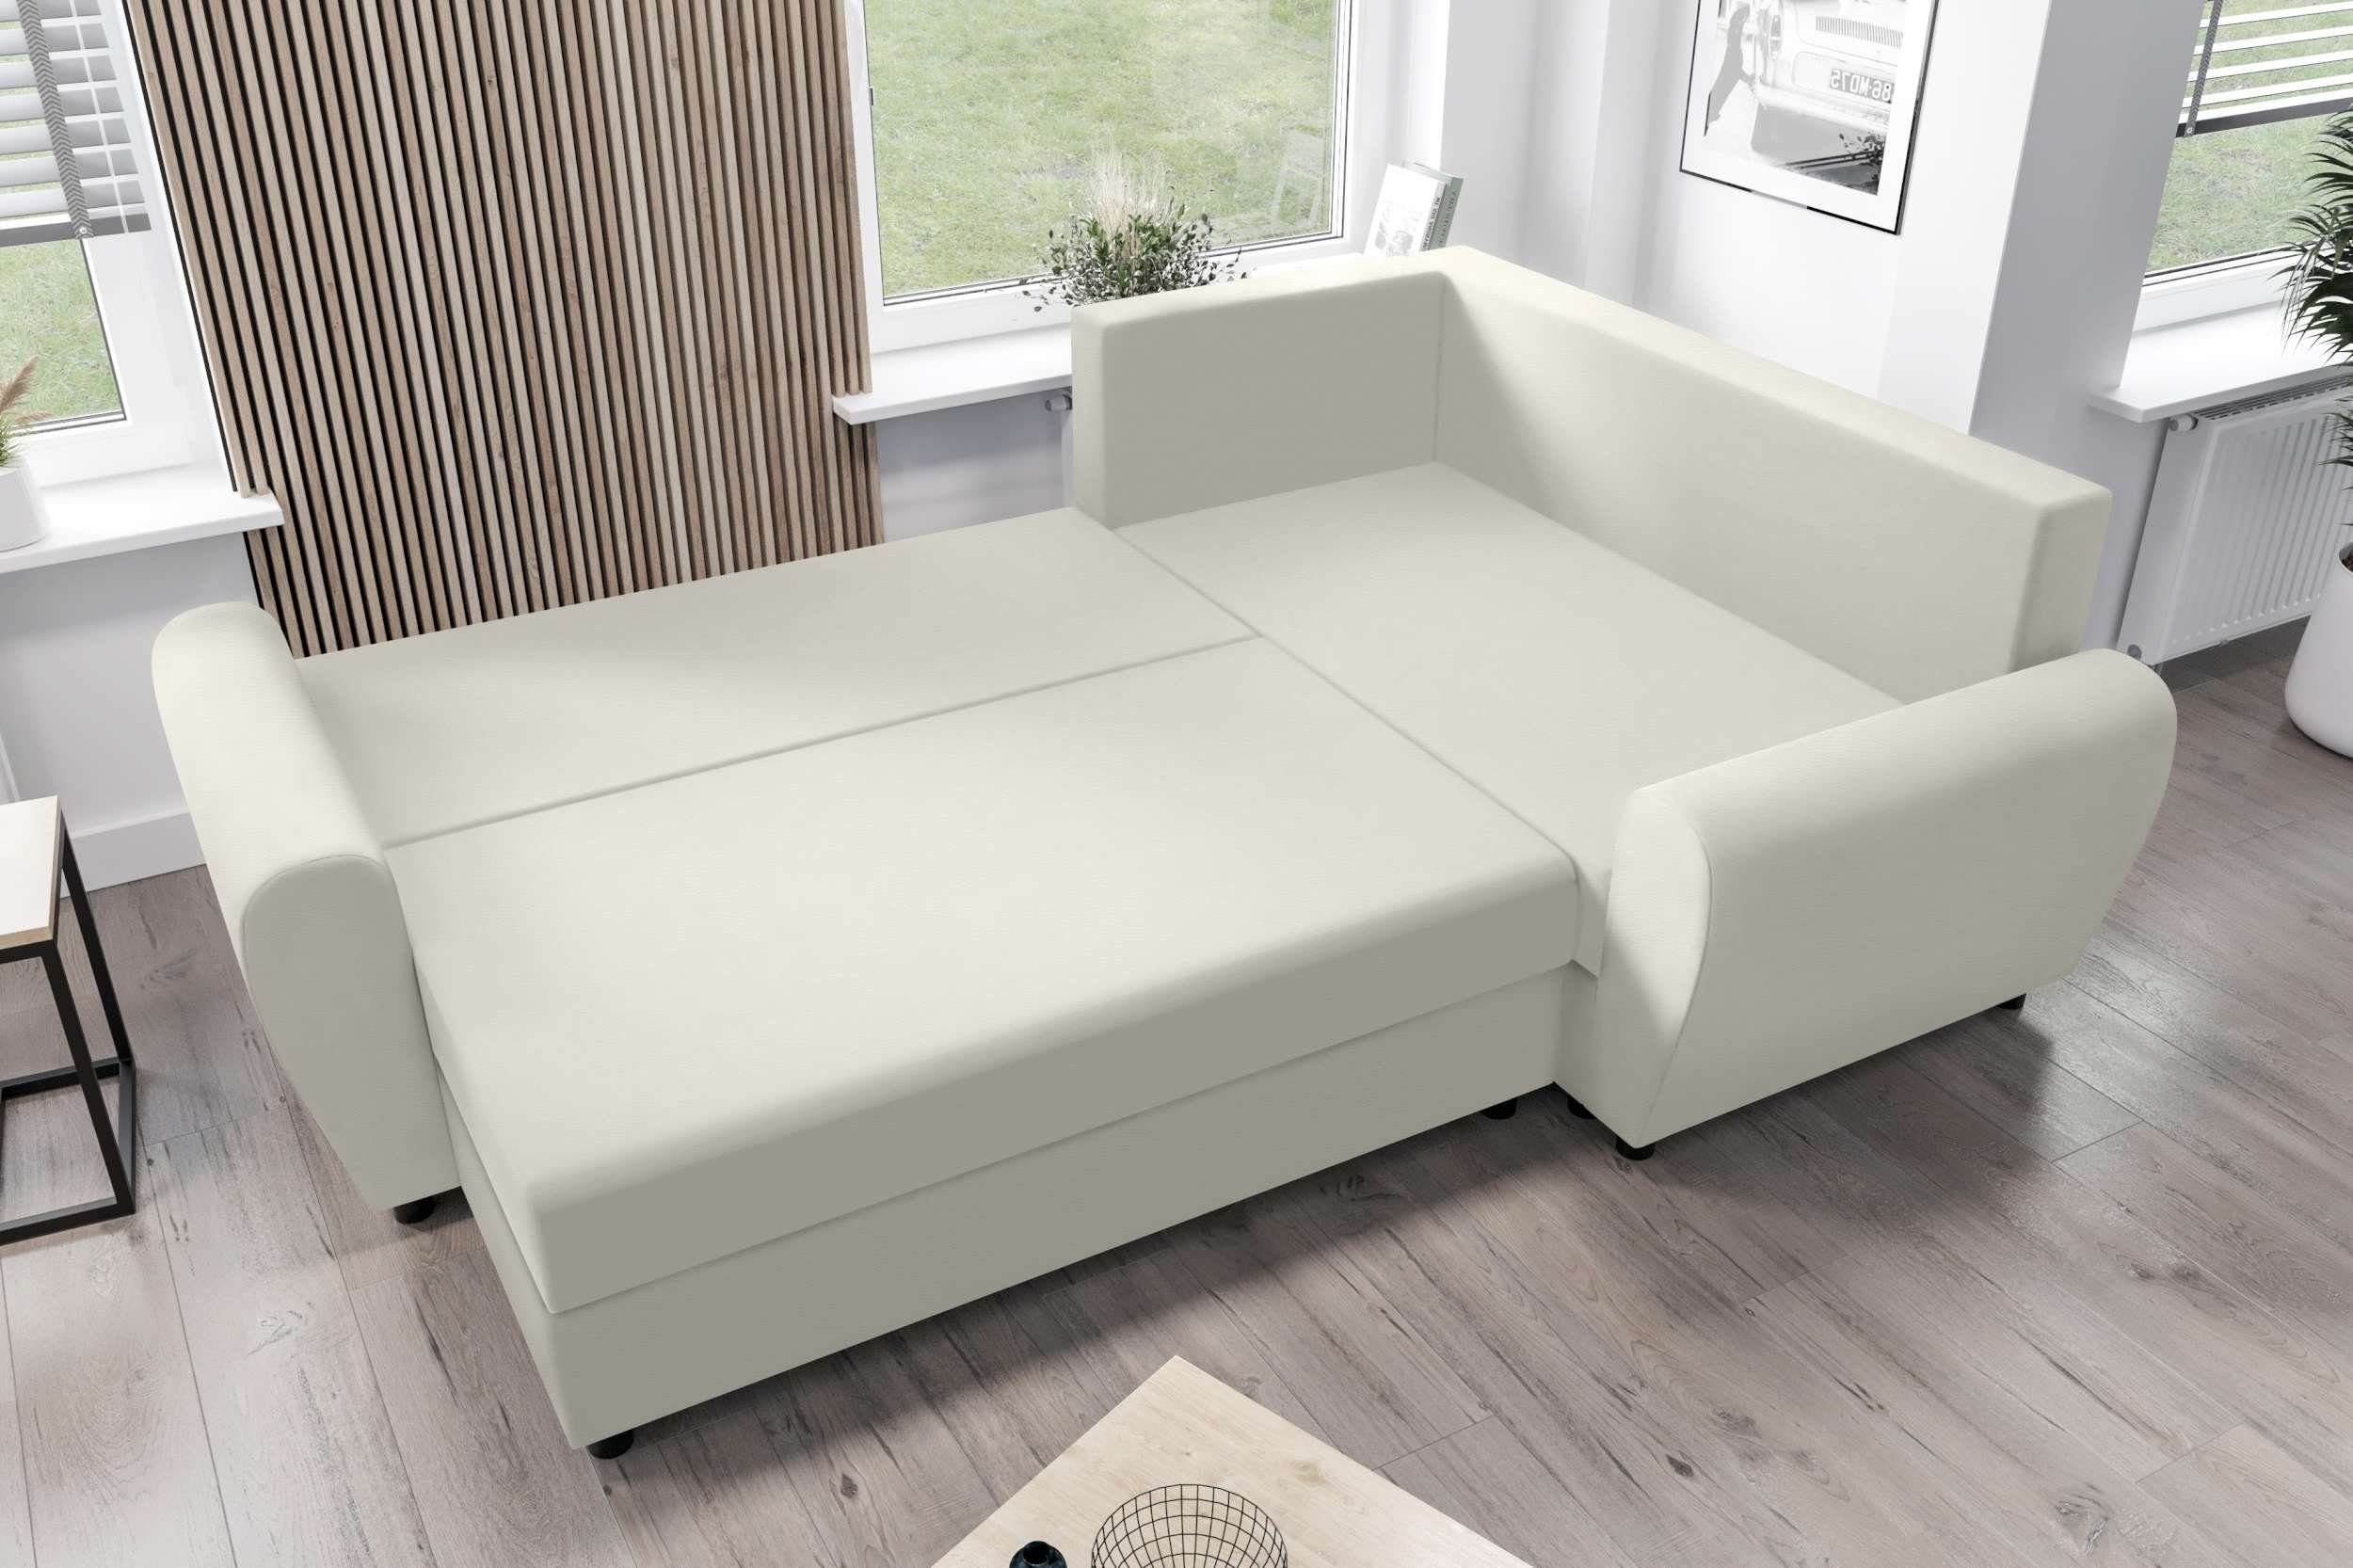 Stylefy Ecksofa Valence, Eckcouch, Modern Sofa, L-Form, Design mit Sitzkomfort, Bettfunktion, Bettkasten, mit